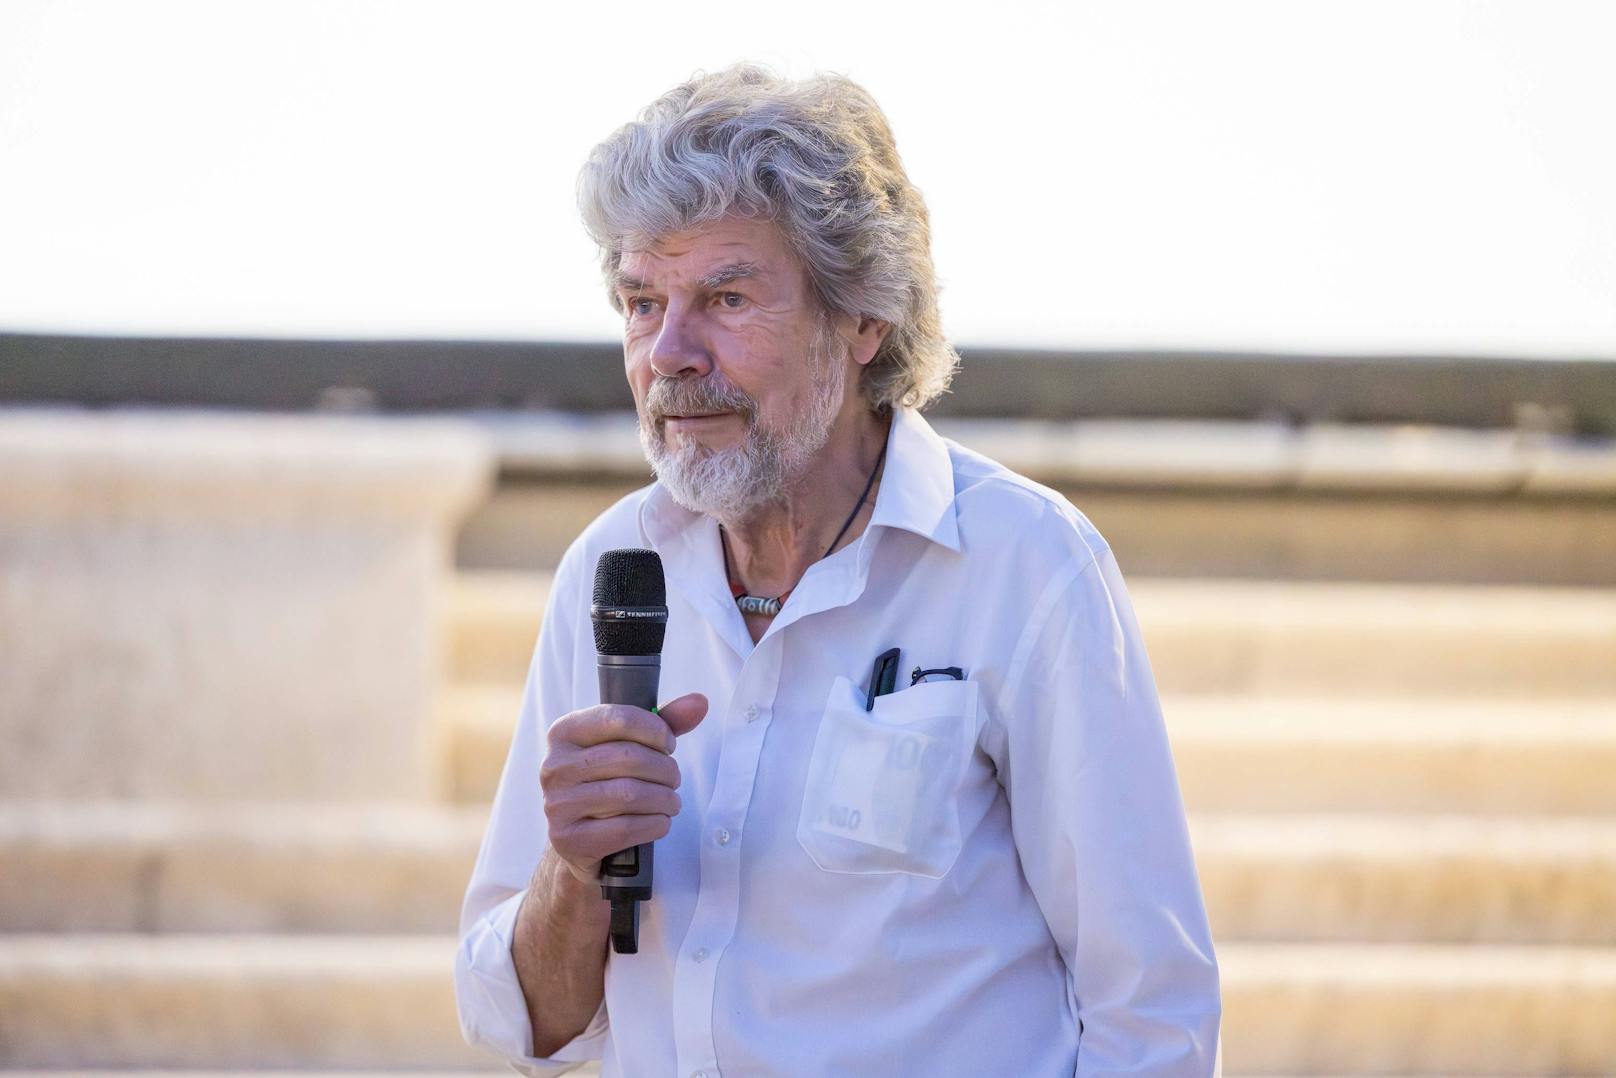 Rekord aberkannt – jetzt schießt Messner gegen Experten